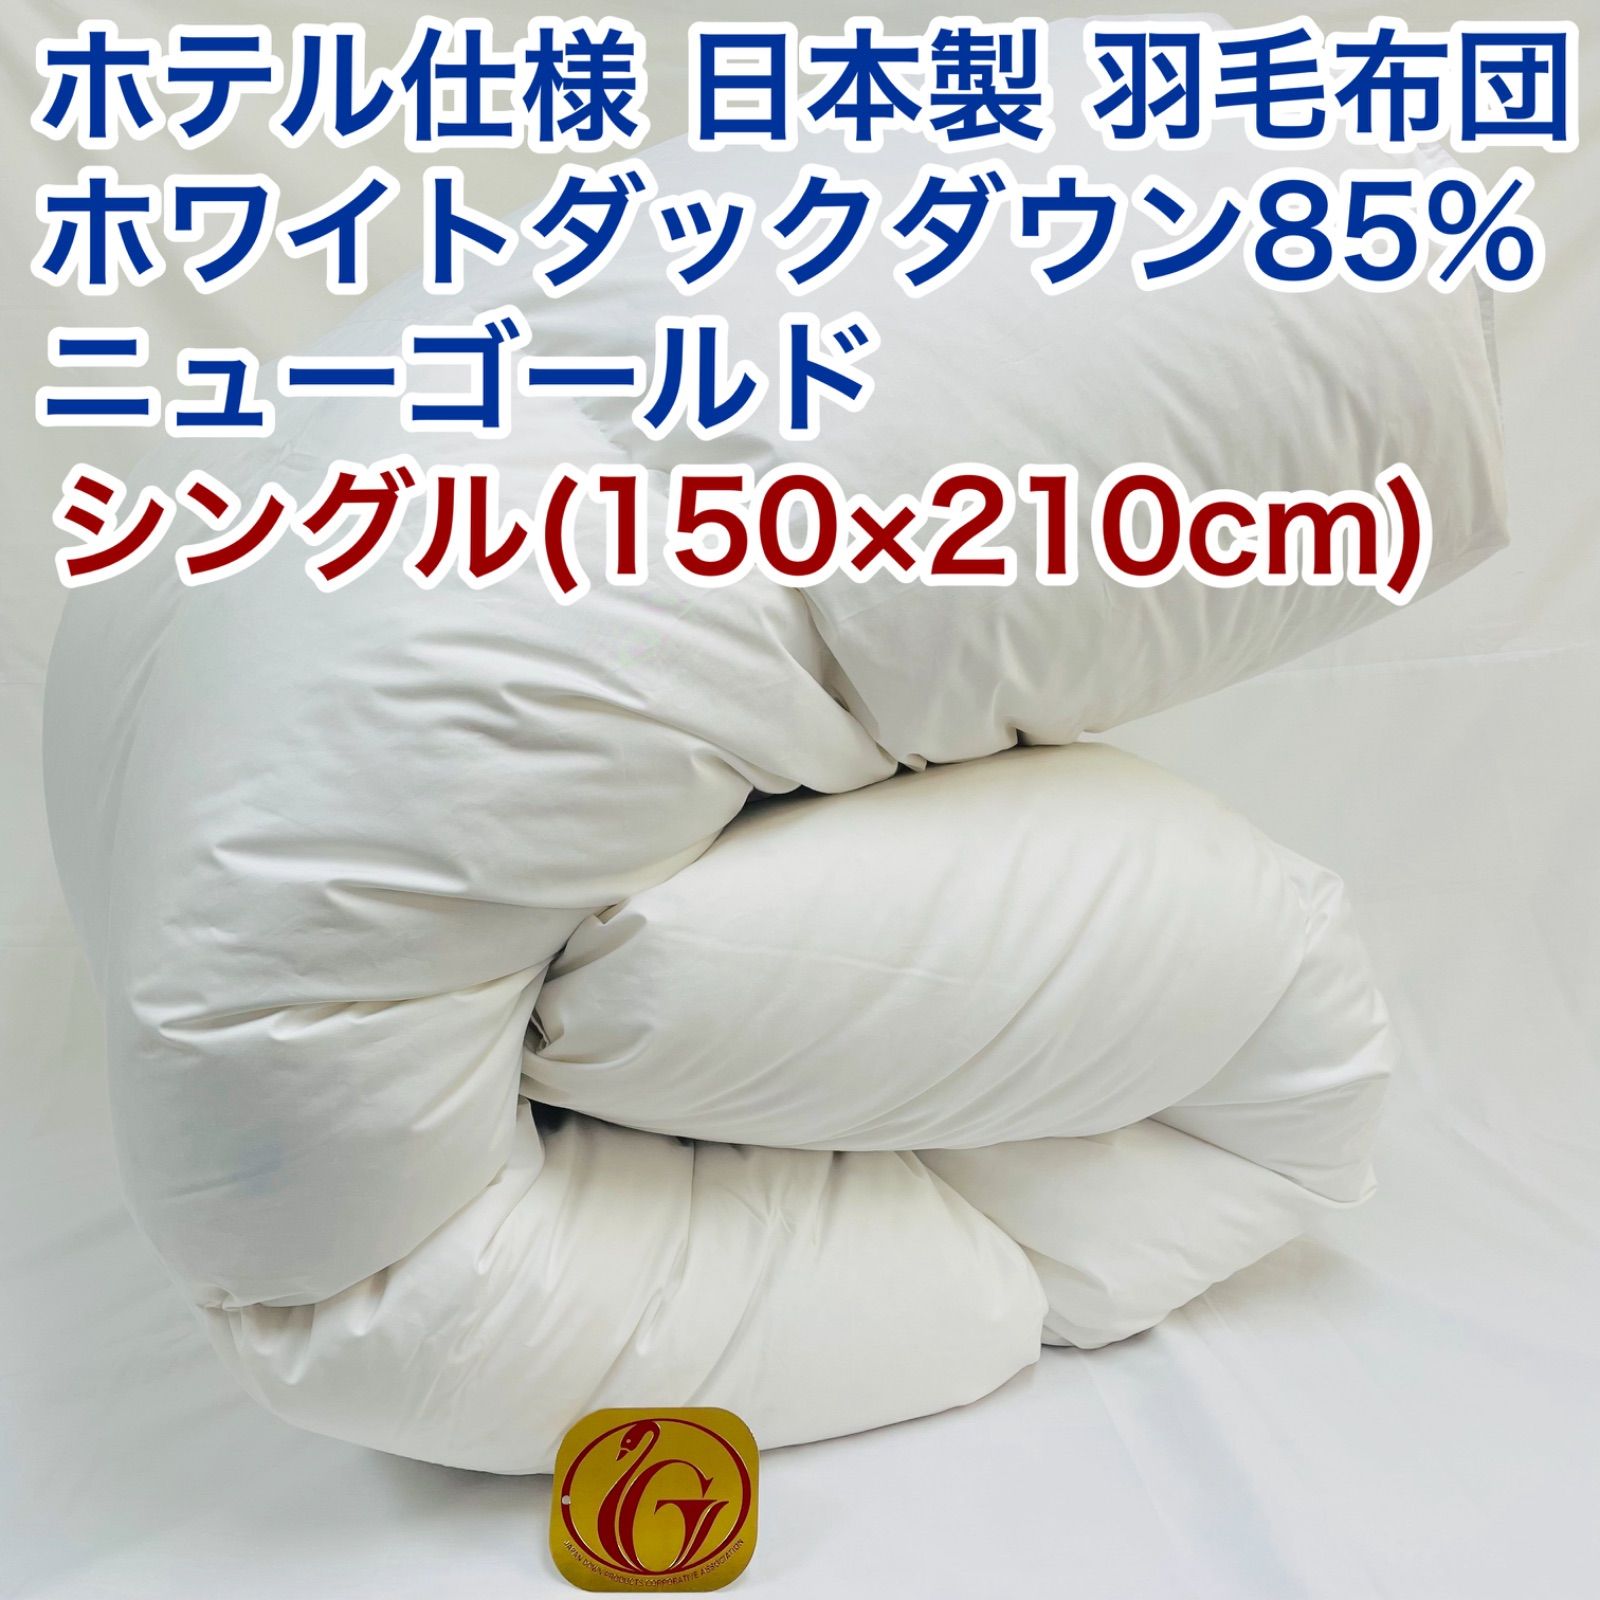 羽毛布団 シングル ニューゴールド 白色 日本製 150×210cm - 布団・毛布